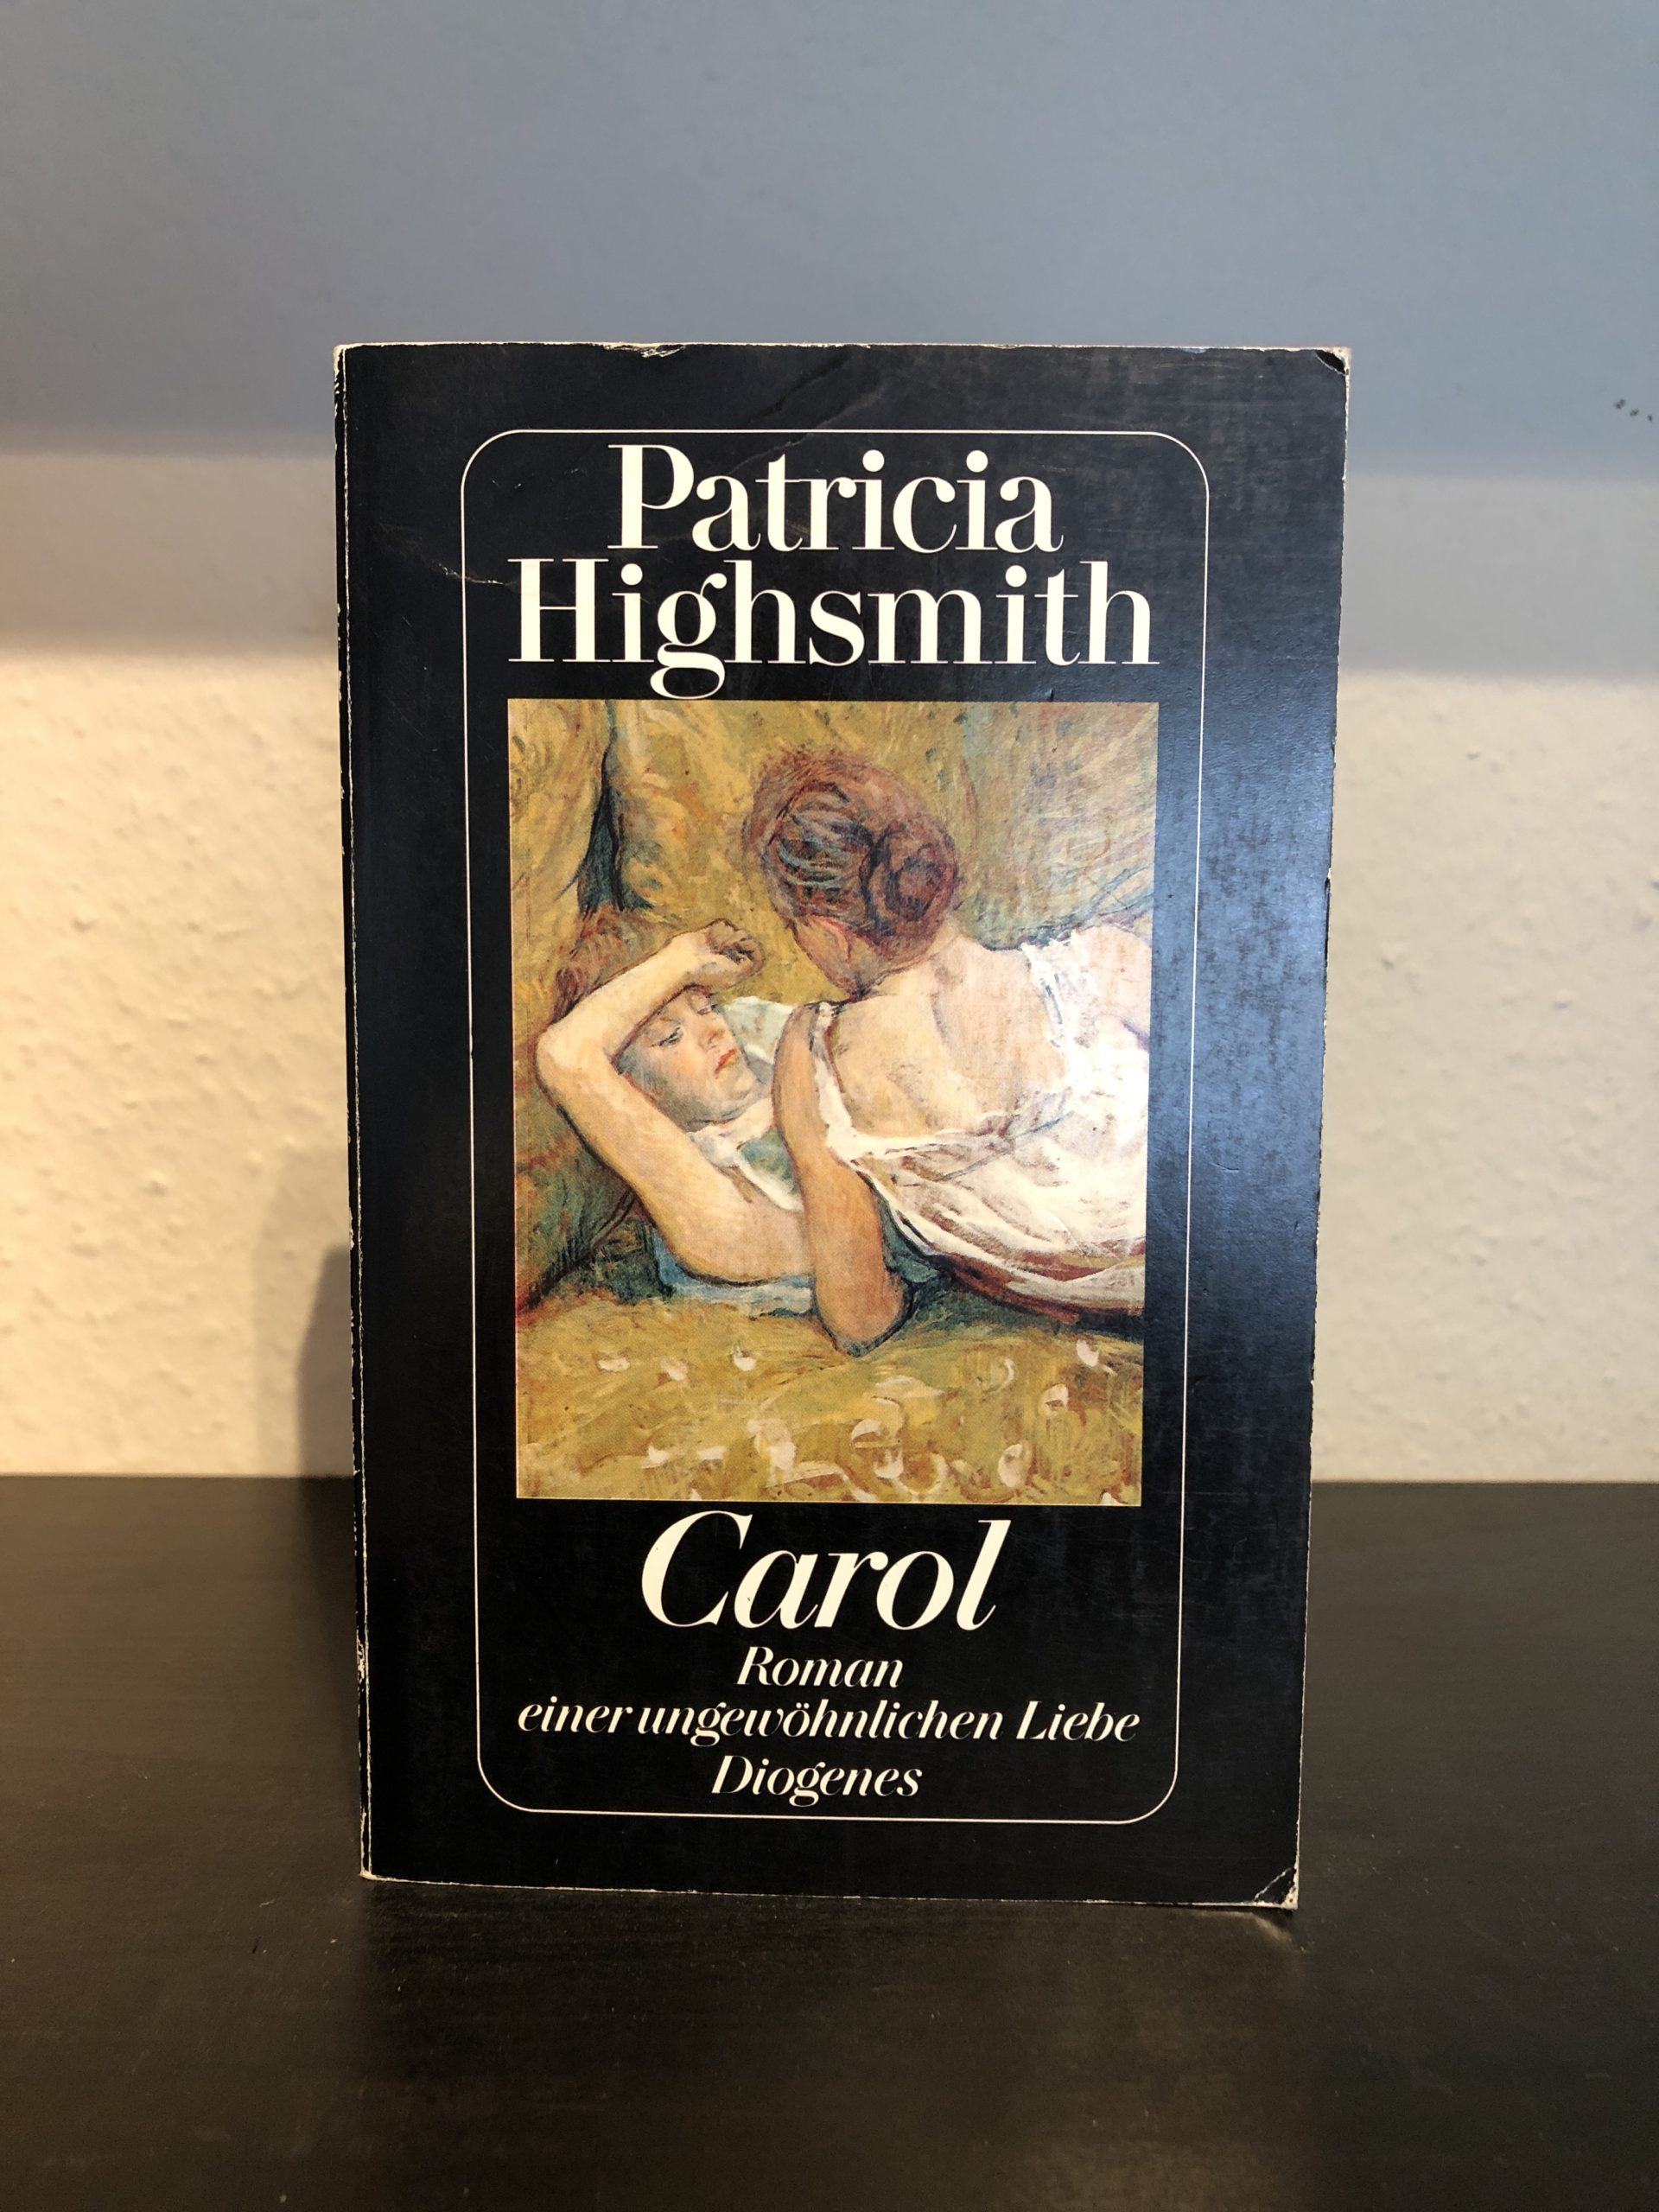 Carol - Roman einer ungewöhnlichen Liebe - Patricia Highsmith main image